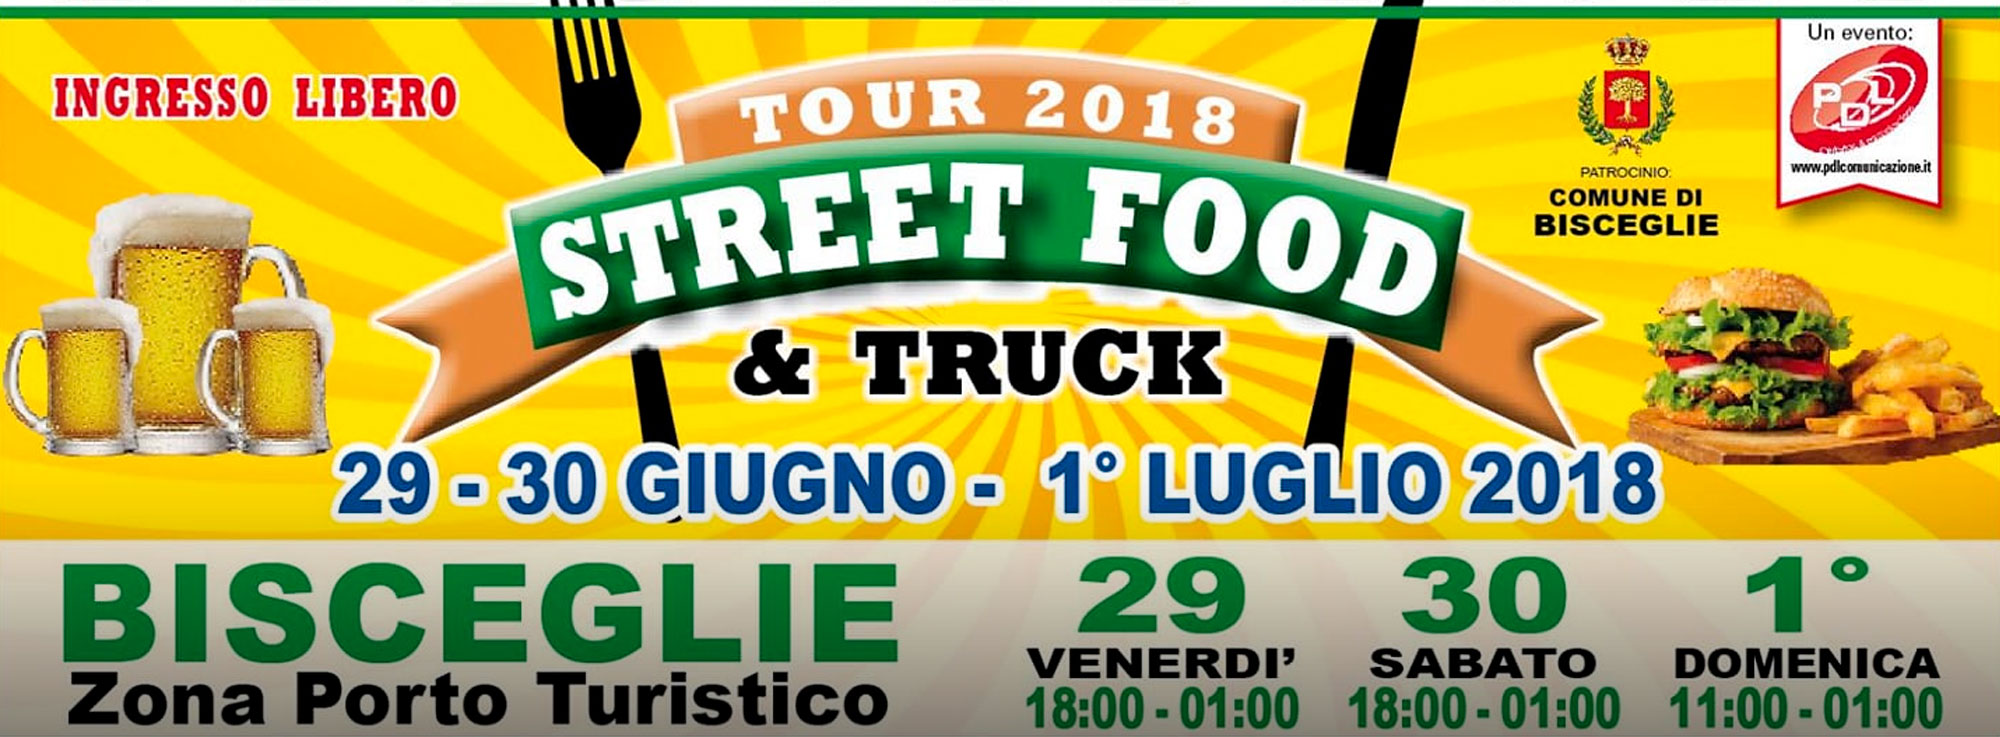 Bisceglie: Bisceglie Street Food & Truck Festival 2018